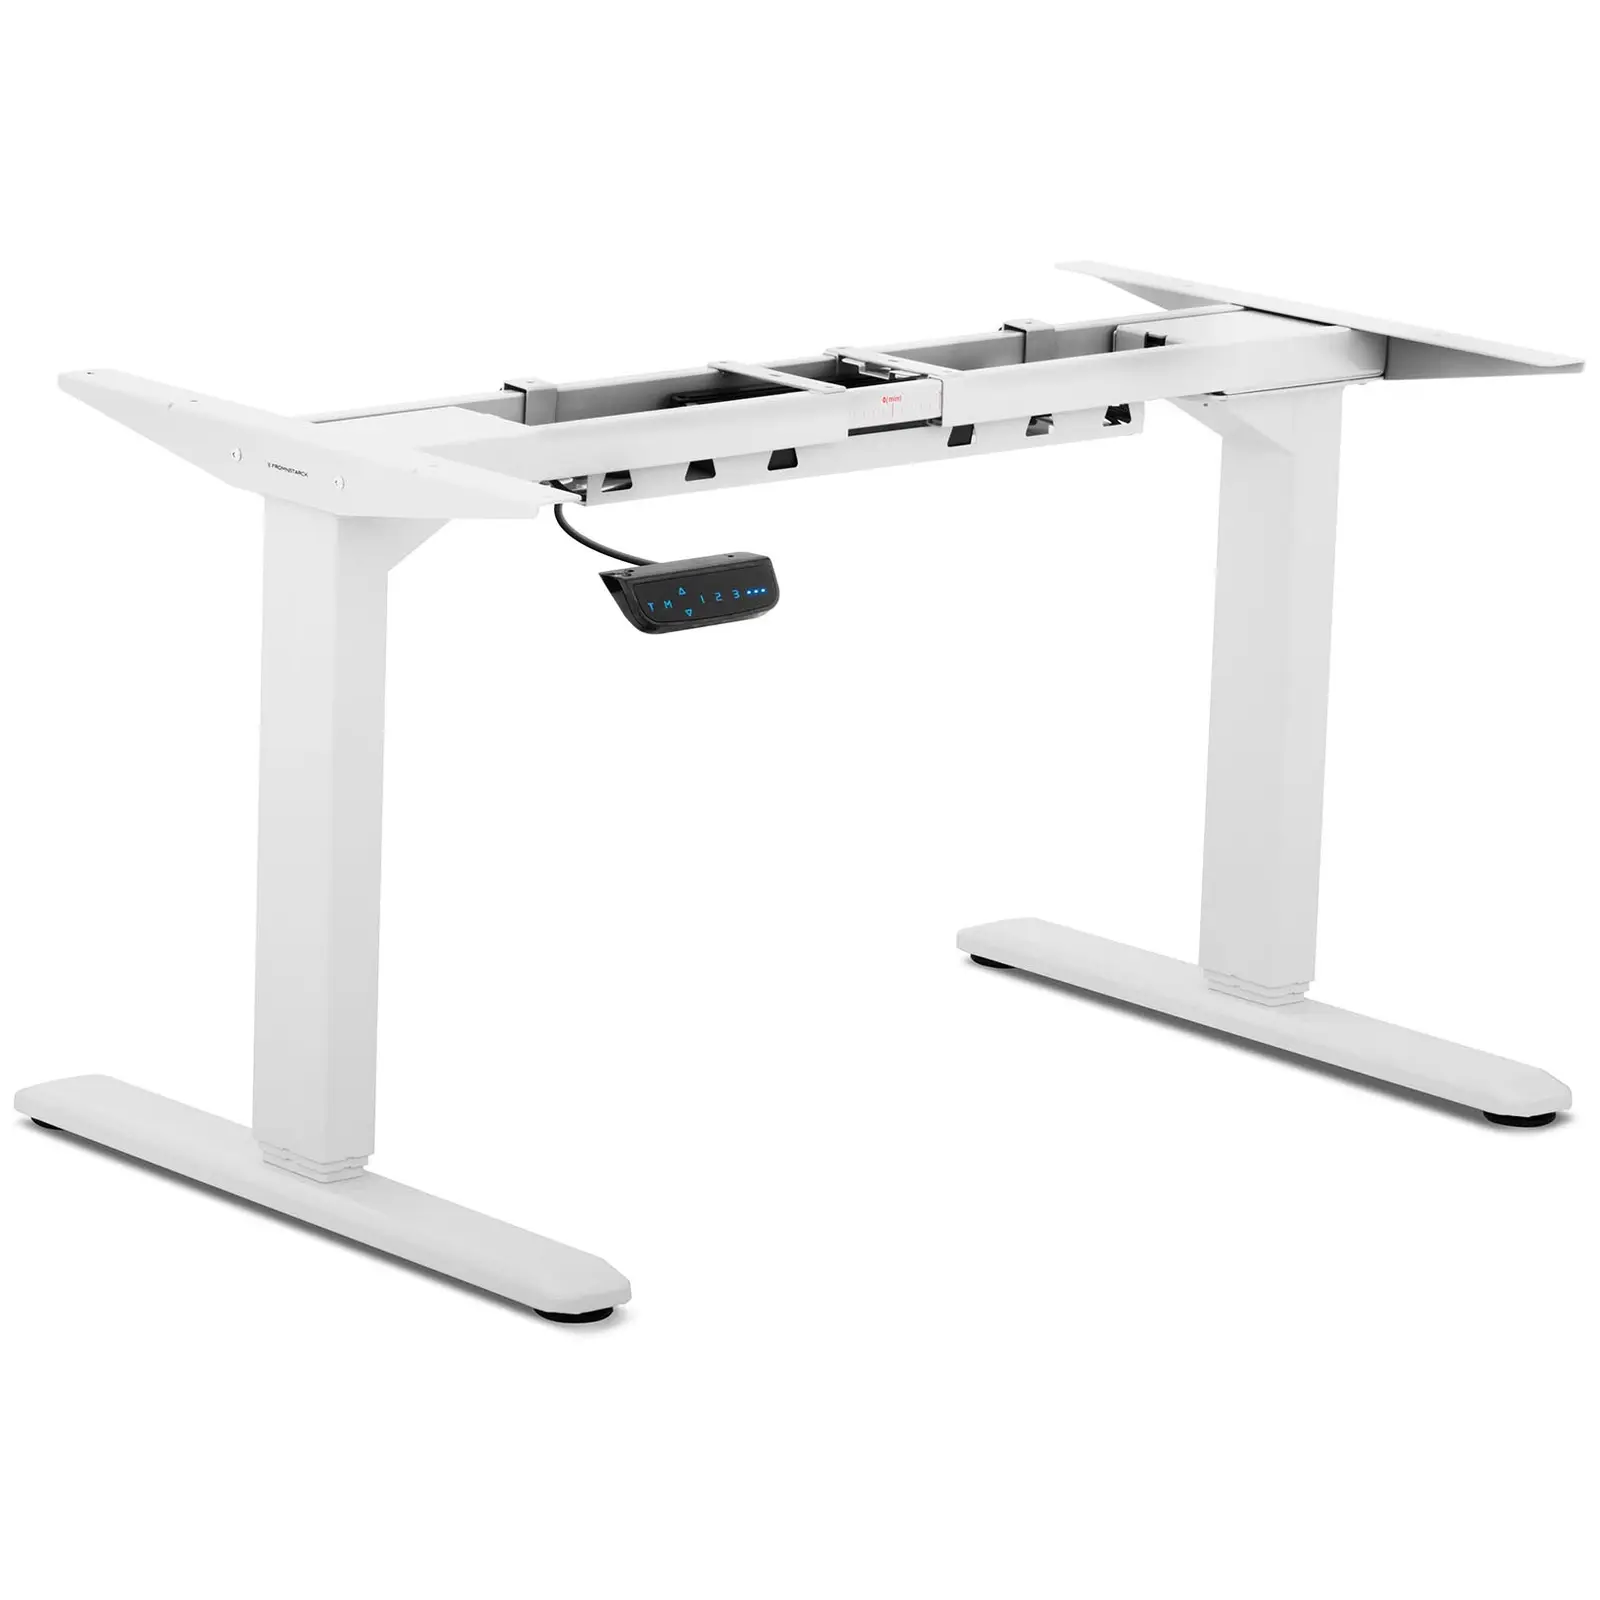 Höhenverstellbares Schreibtischgestell - 200 W - 100 kg - weiß